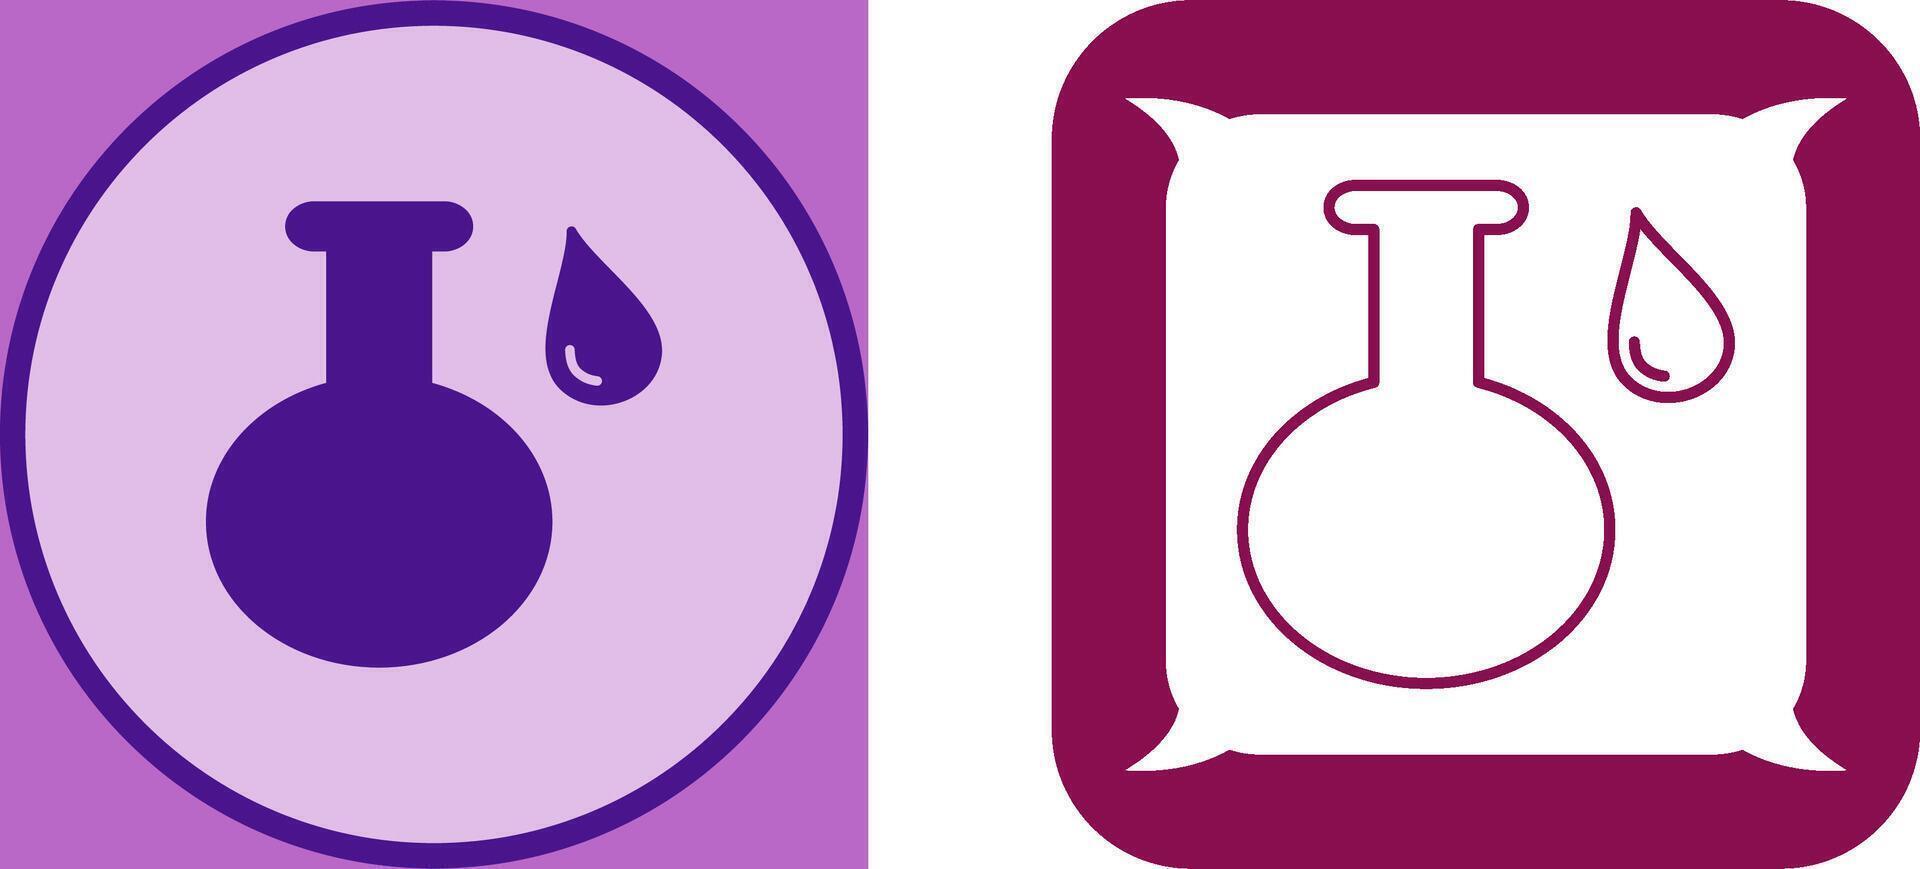 Acidic Liquid Icon Design vector